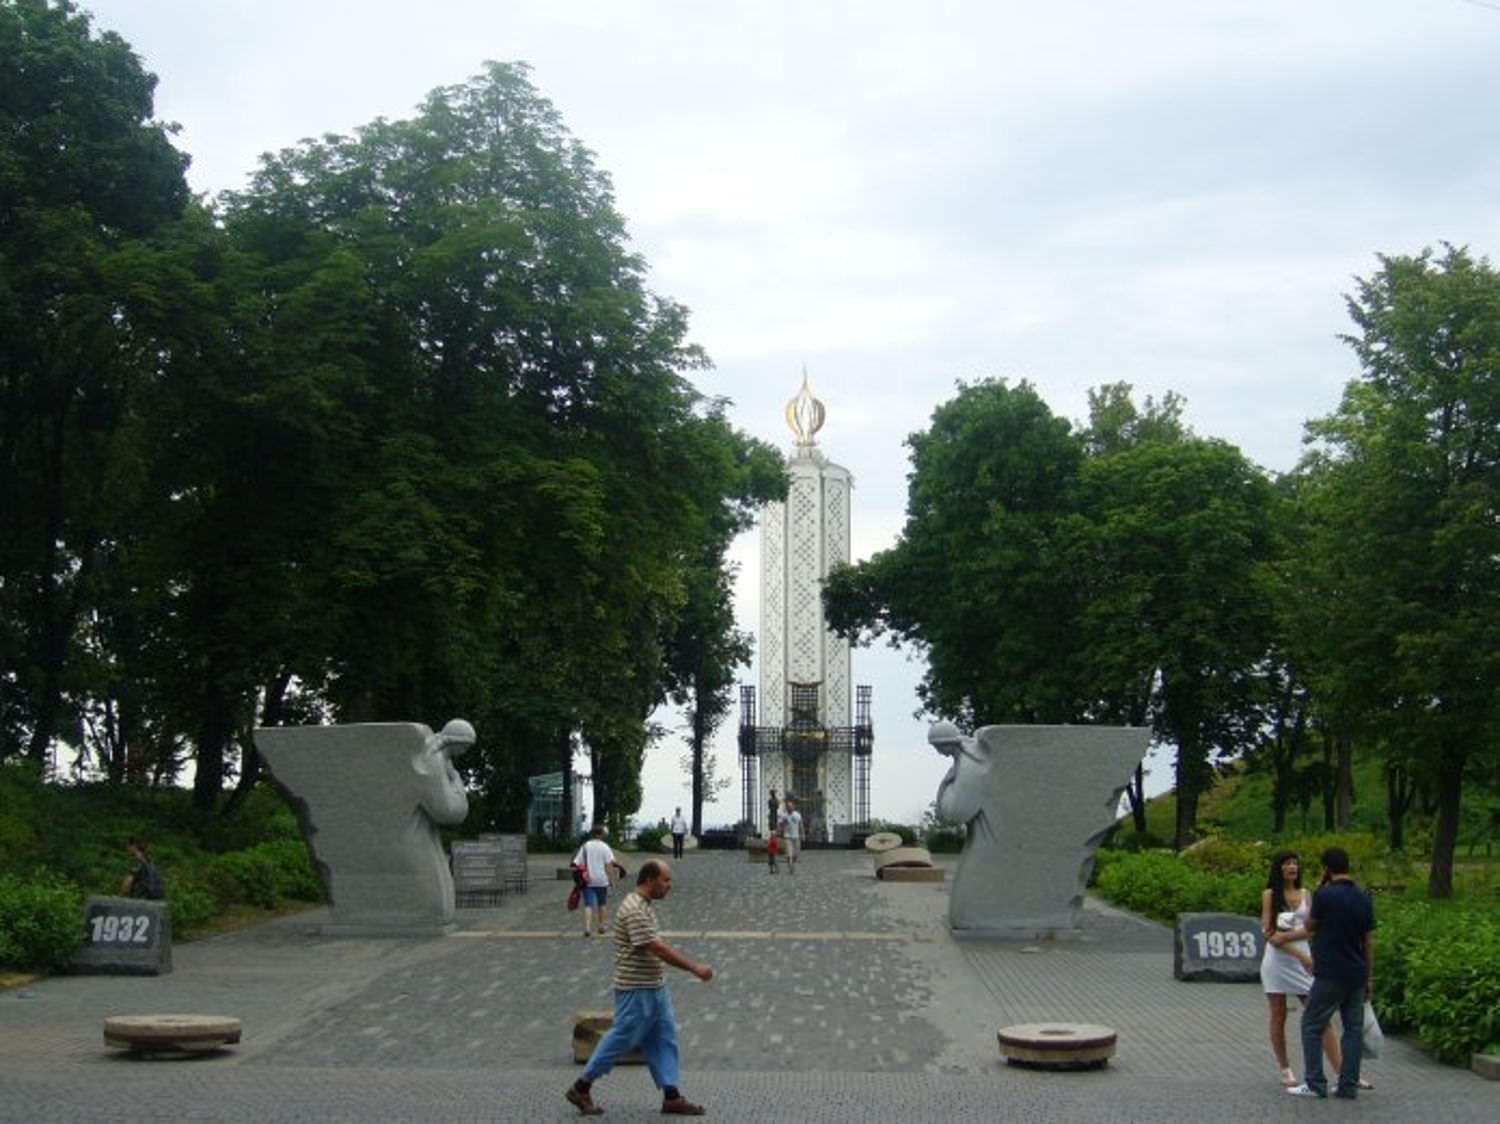 Мирный Киев летом 2010 года. Часть 4. Архитектура, достопримечательности и улицы.